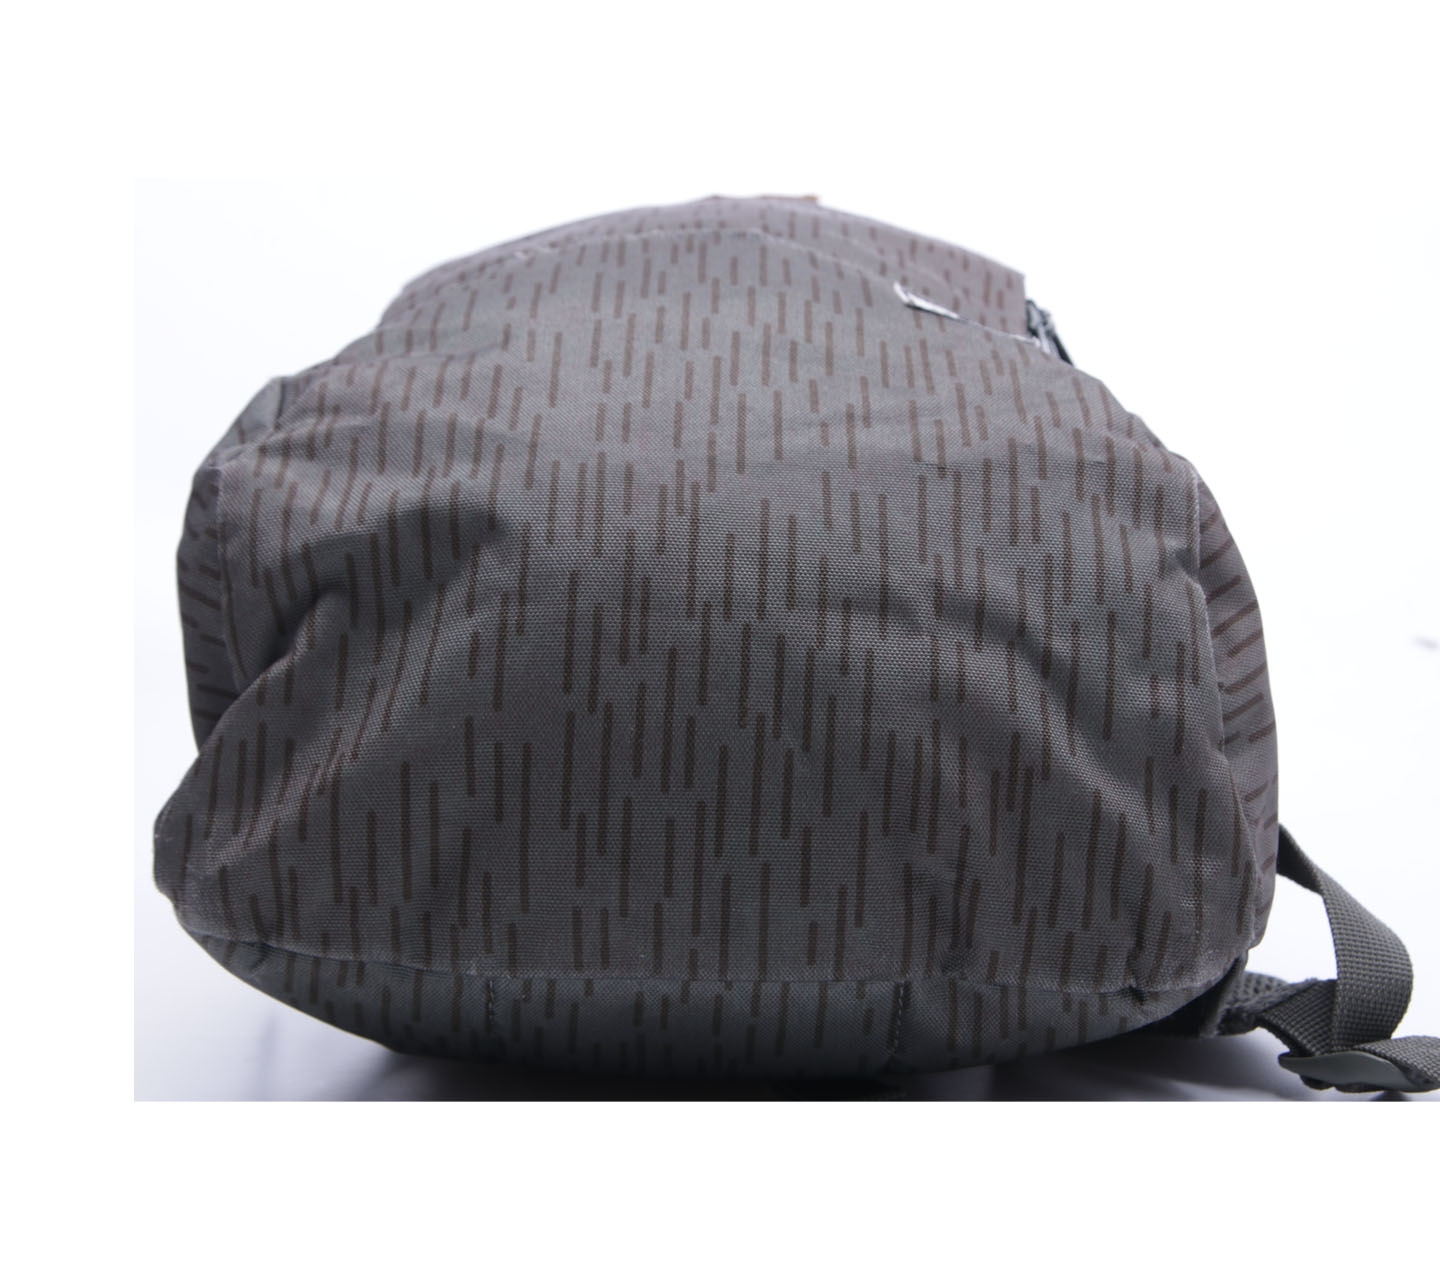 Herschel Grey Backpack